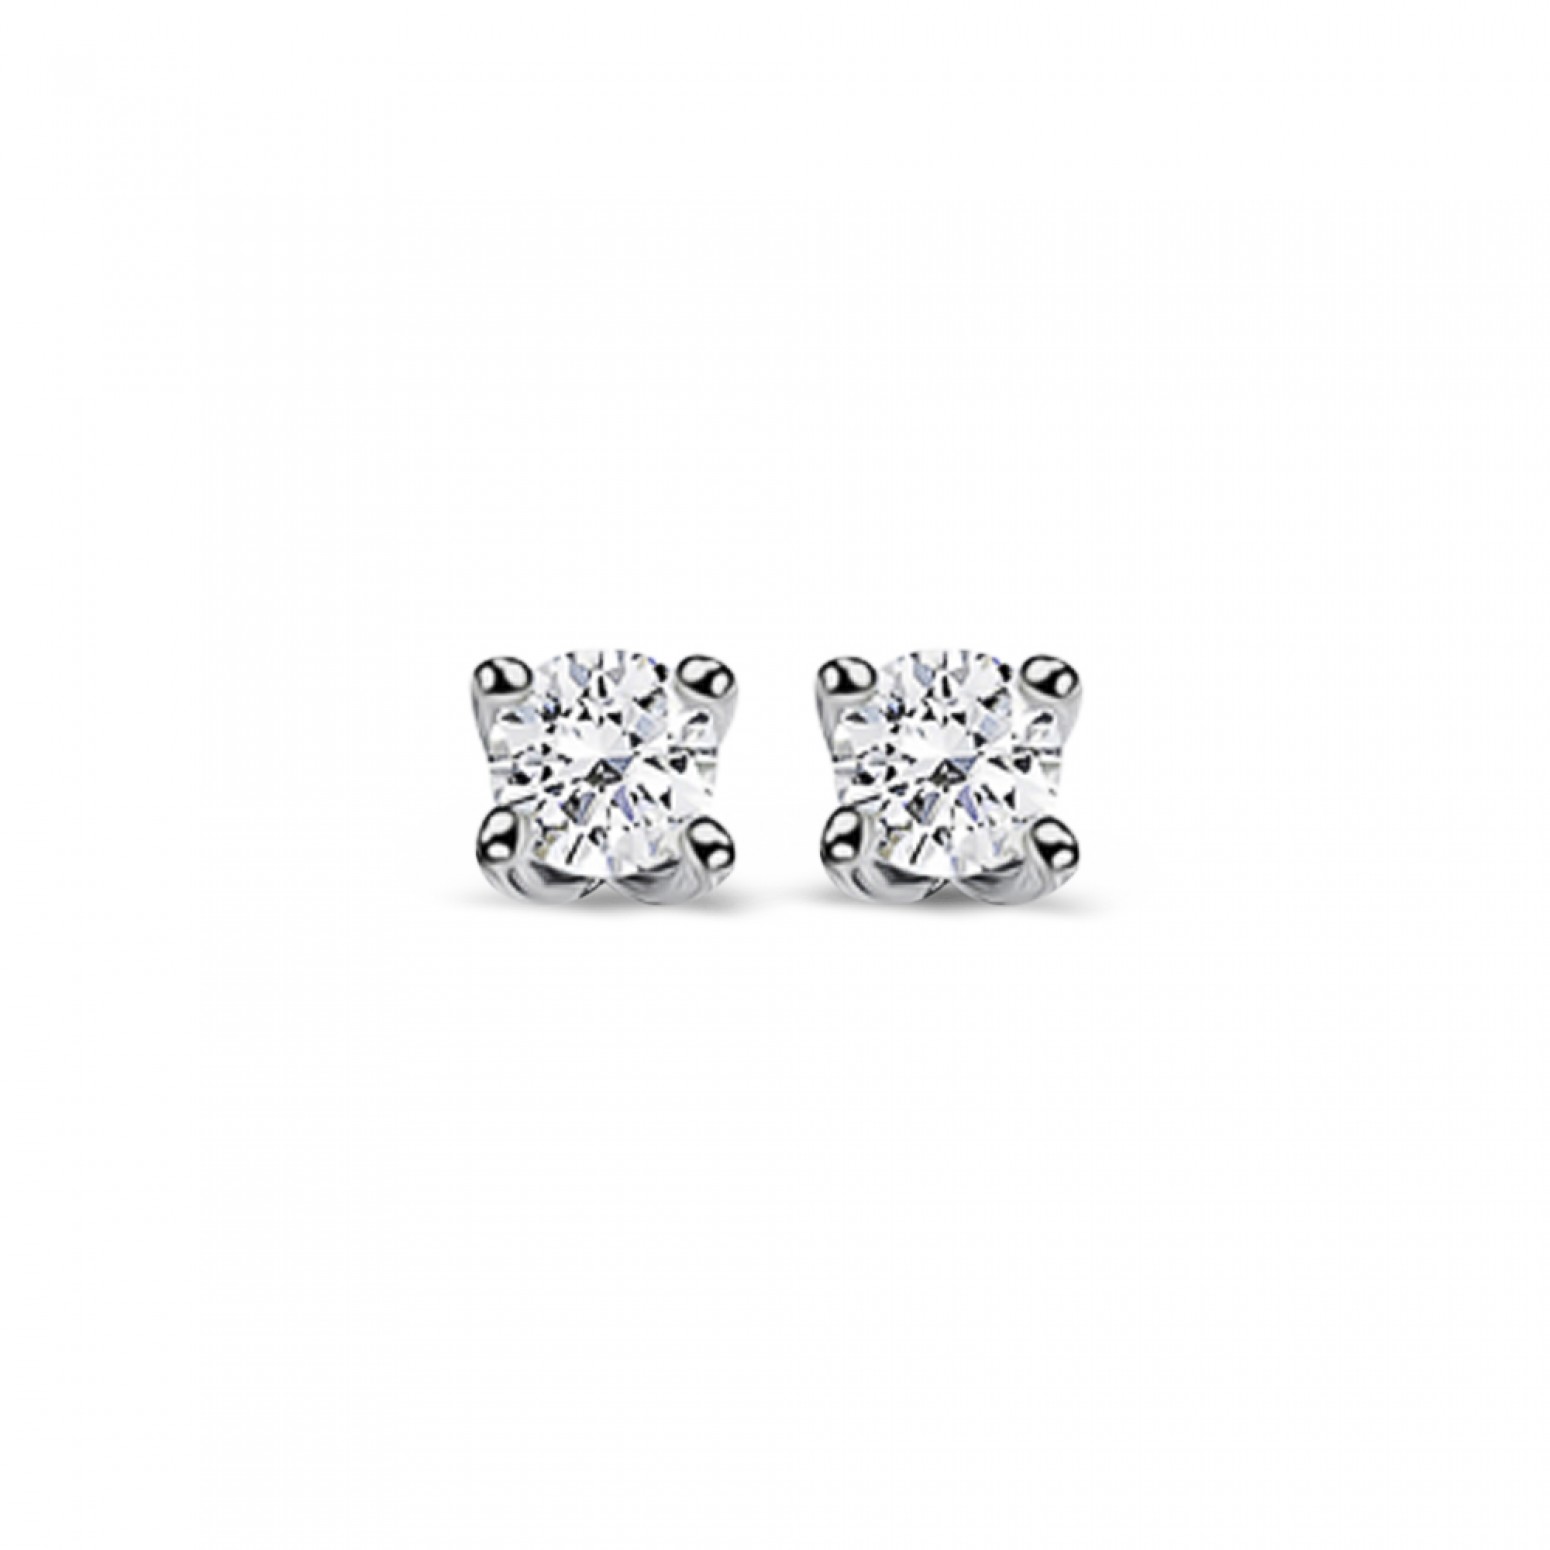 Solitaire earrings 18K white gold with diamonds 0.11ct, VS2, G from IGL sk2896 EARRINGS Κοσμηματα - chrilia.gr